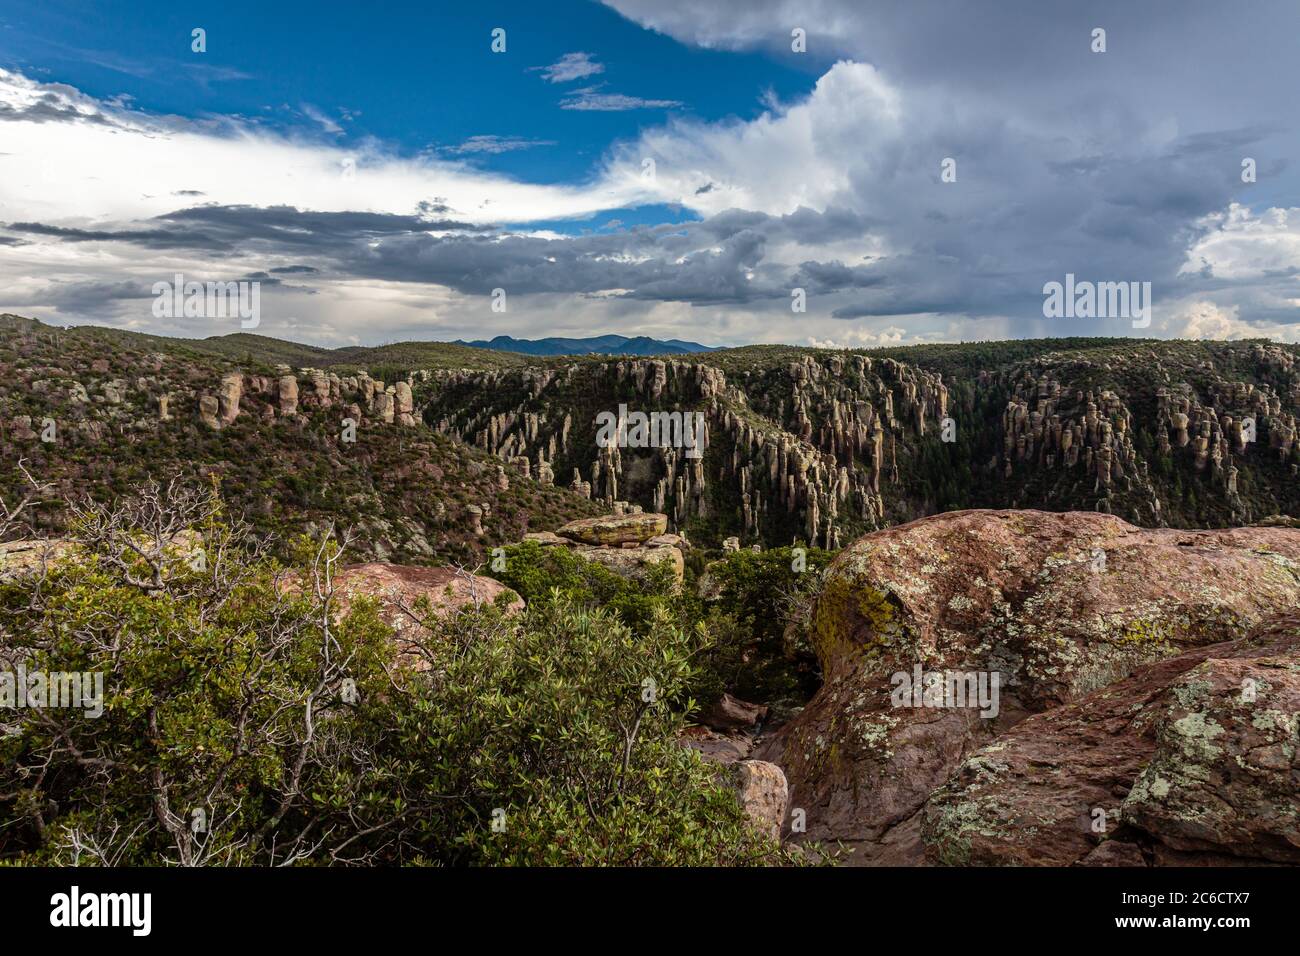 Dieser Blick auf den Zuckerhut bietet einen weiten Blick auf den Rhyolite Canyon im Chiricahua National Monument im Süden Arizonas. Stockfoto